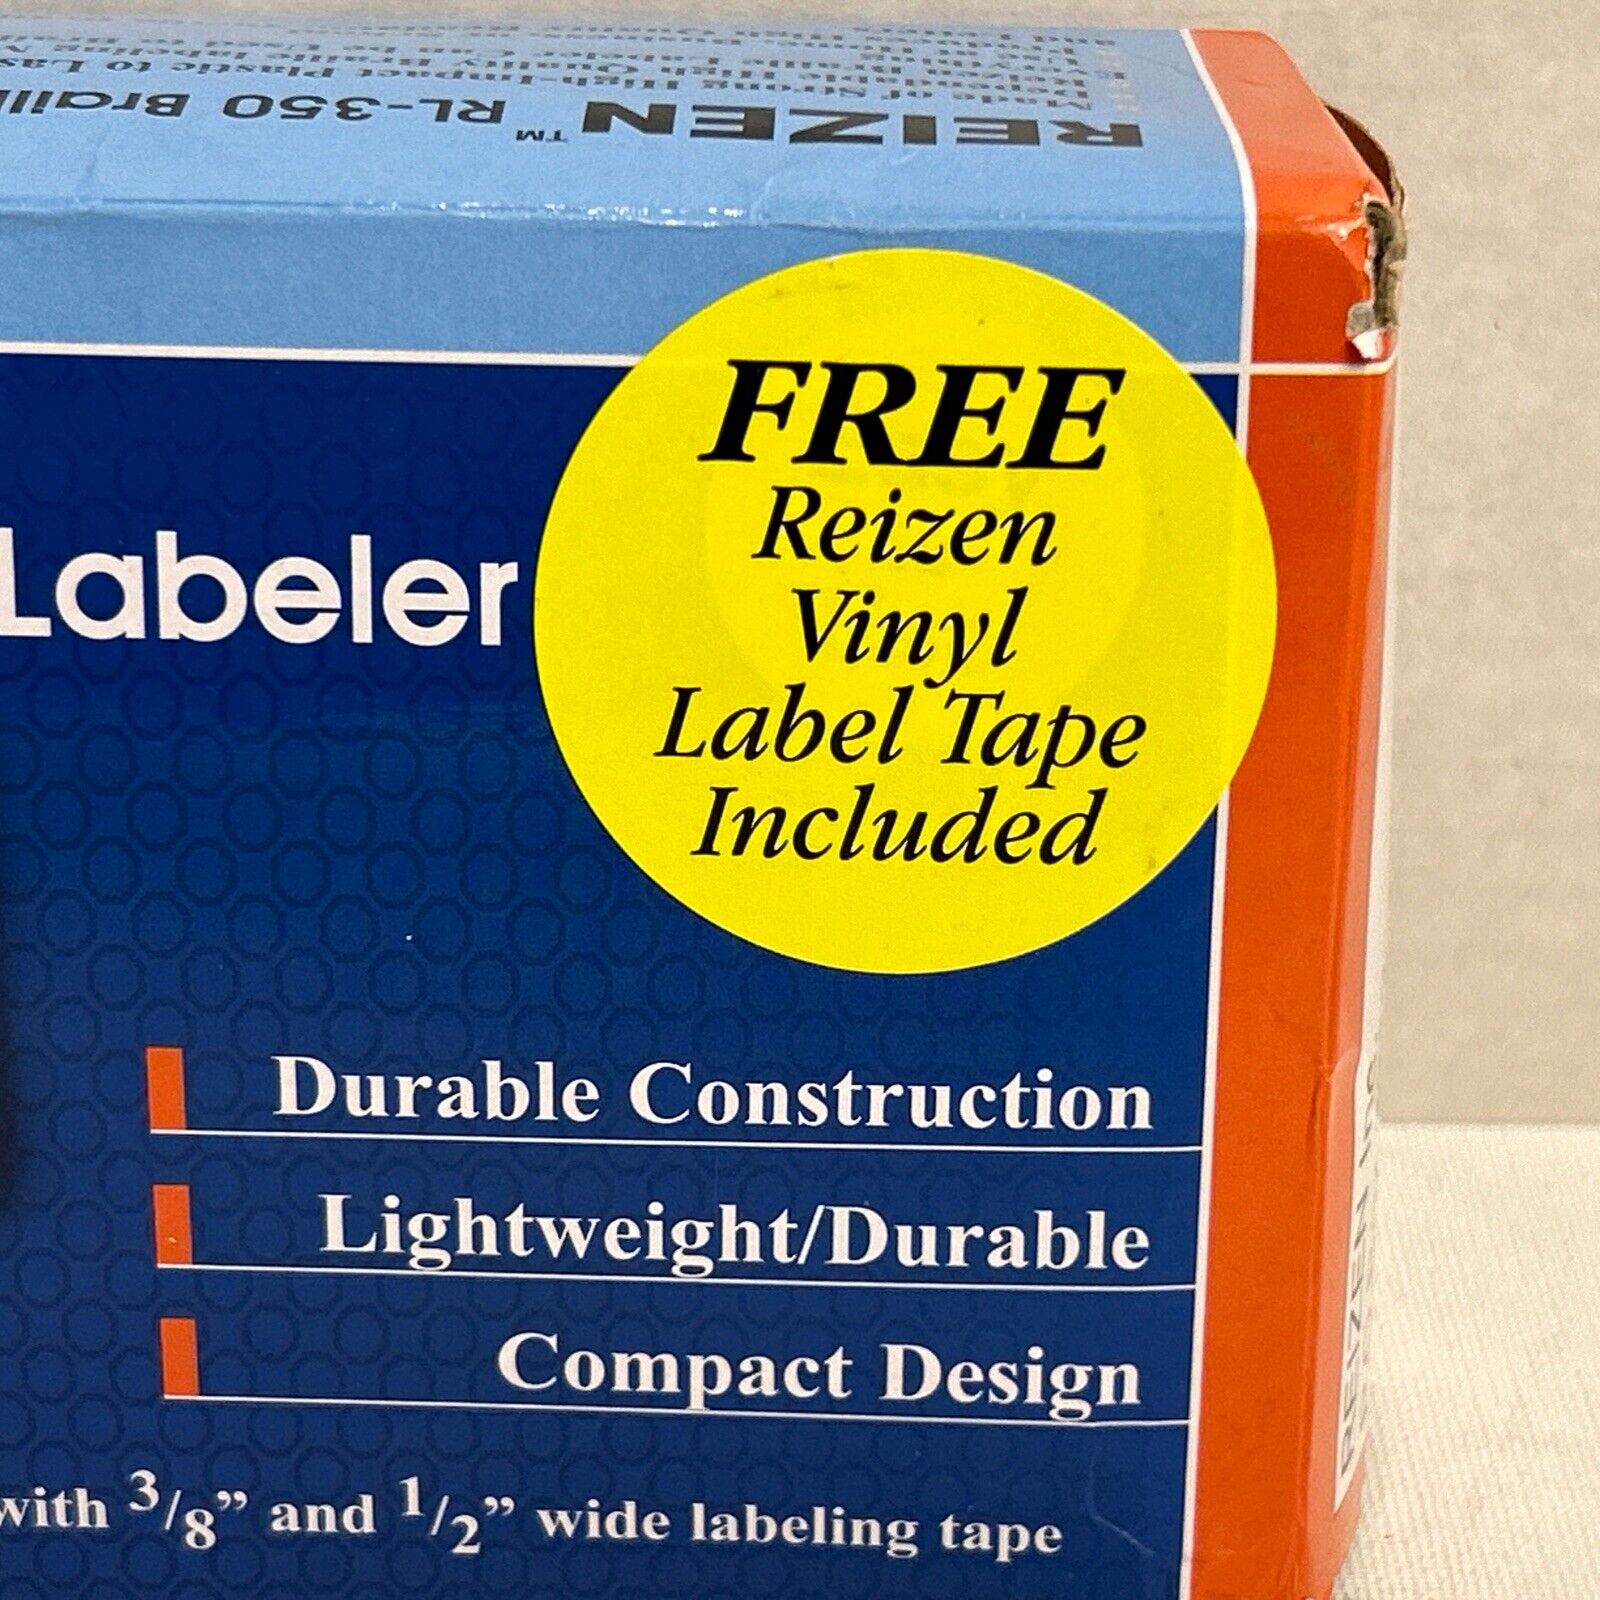 Reizen RL-350 Braille Labeler Label Maker plus Vinyl Label Tape Roll Lightweight